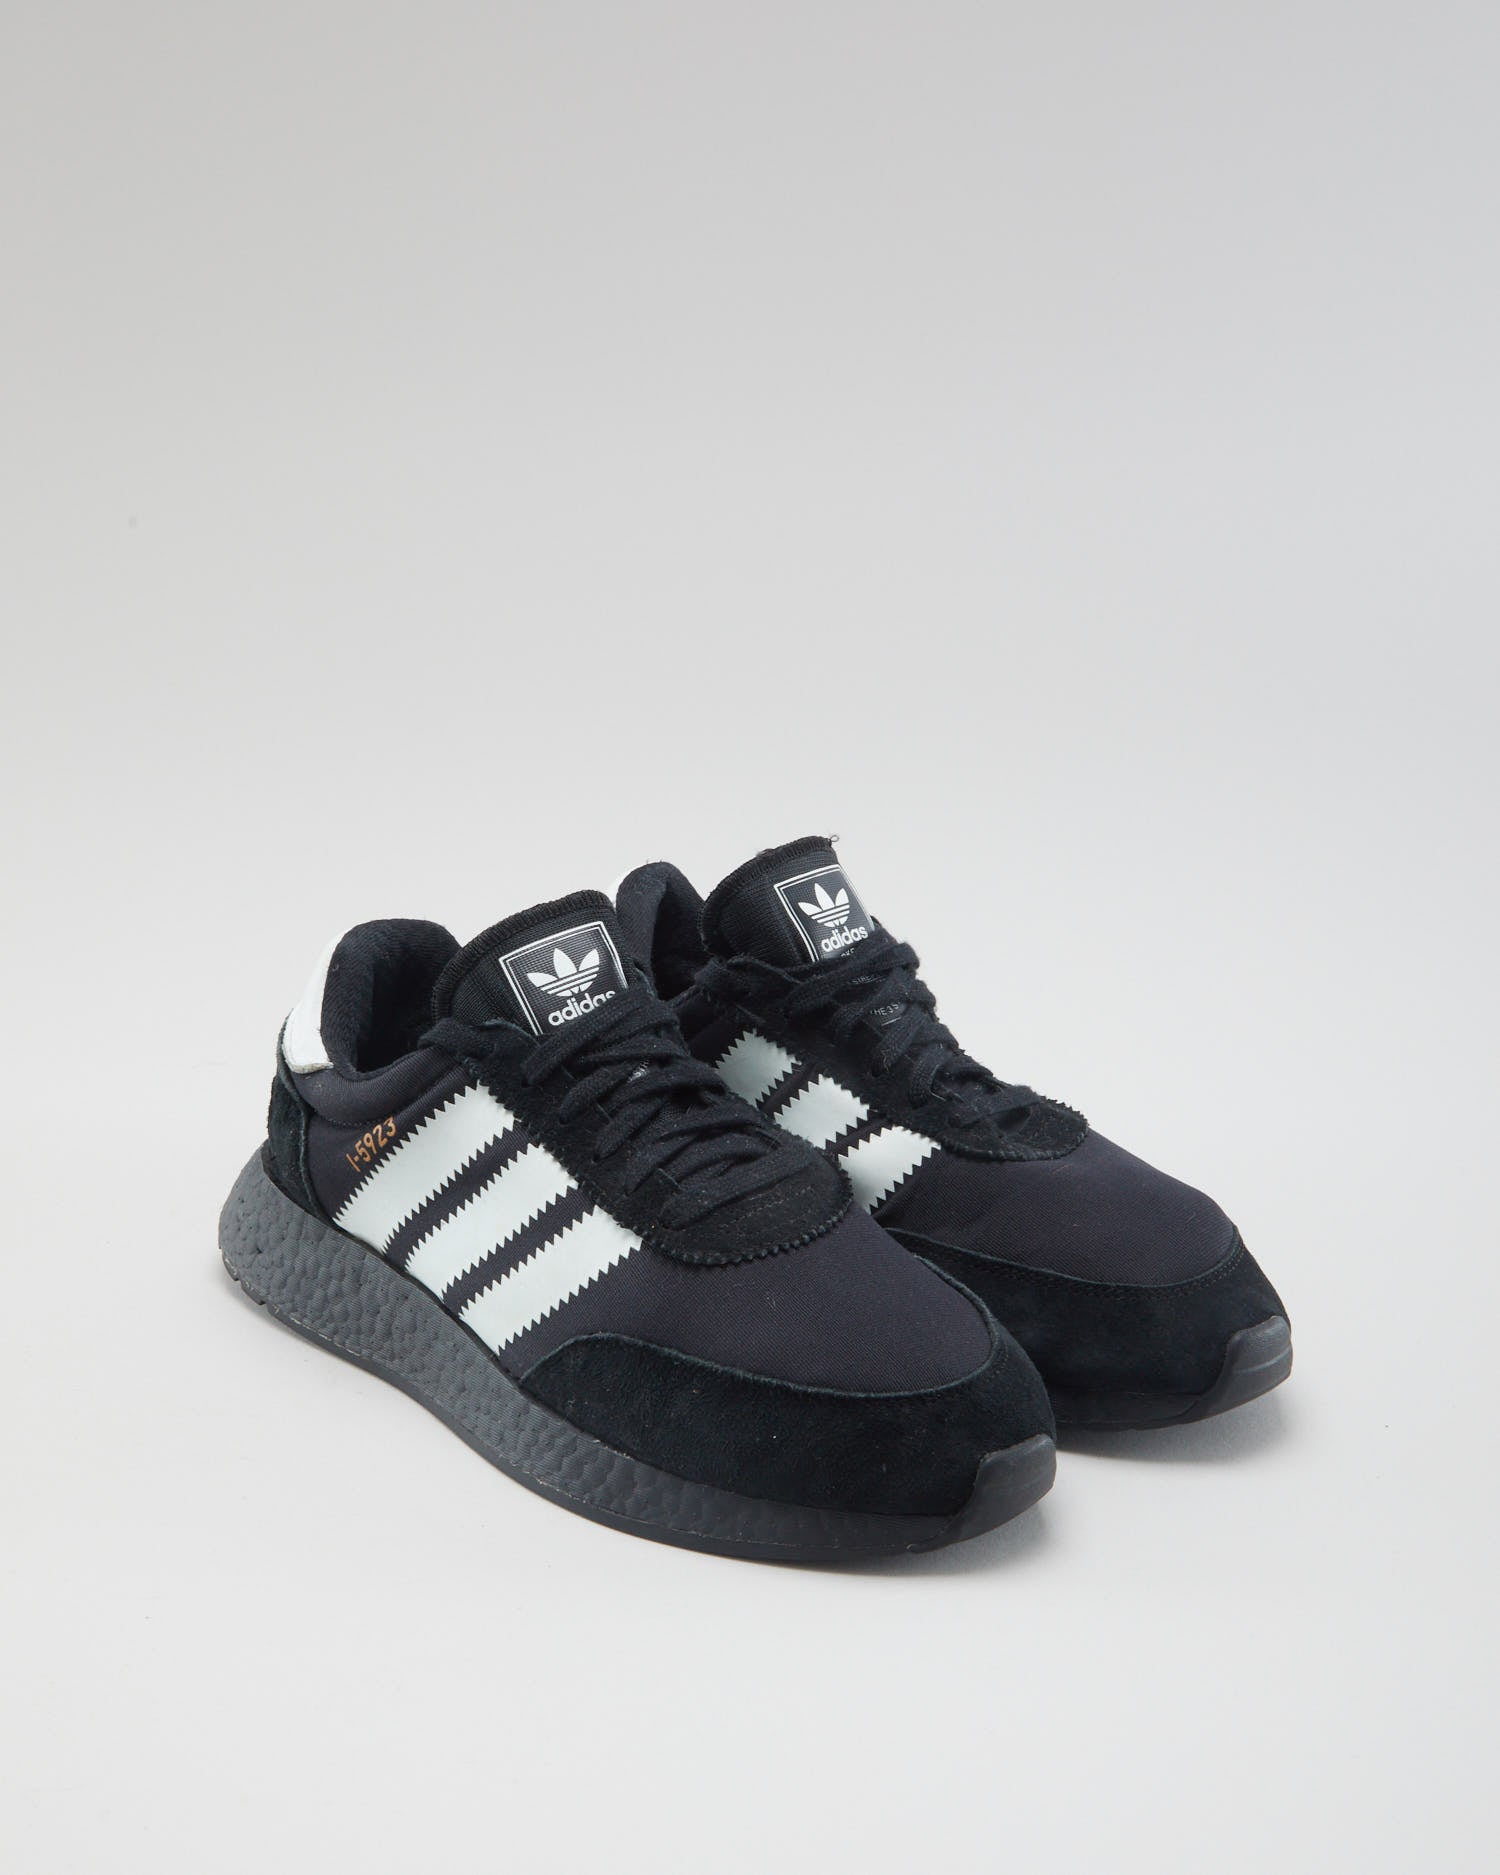 Adidas Black I-5923 - Mens UK 7.5